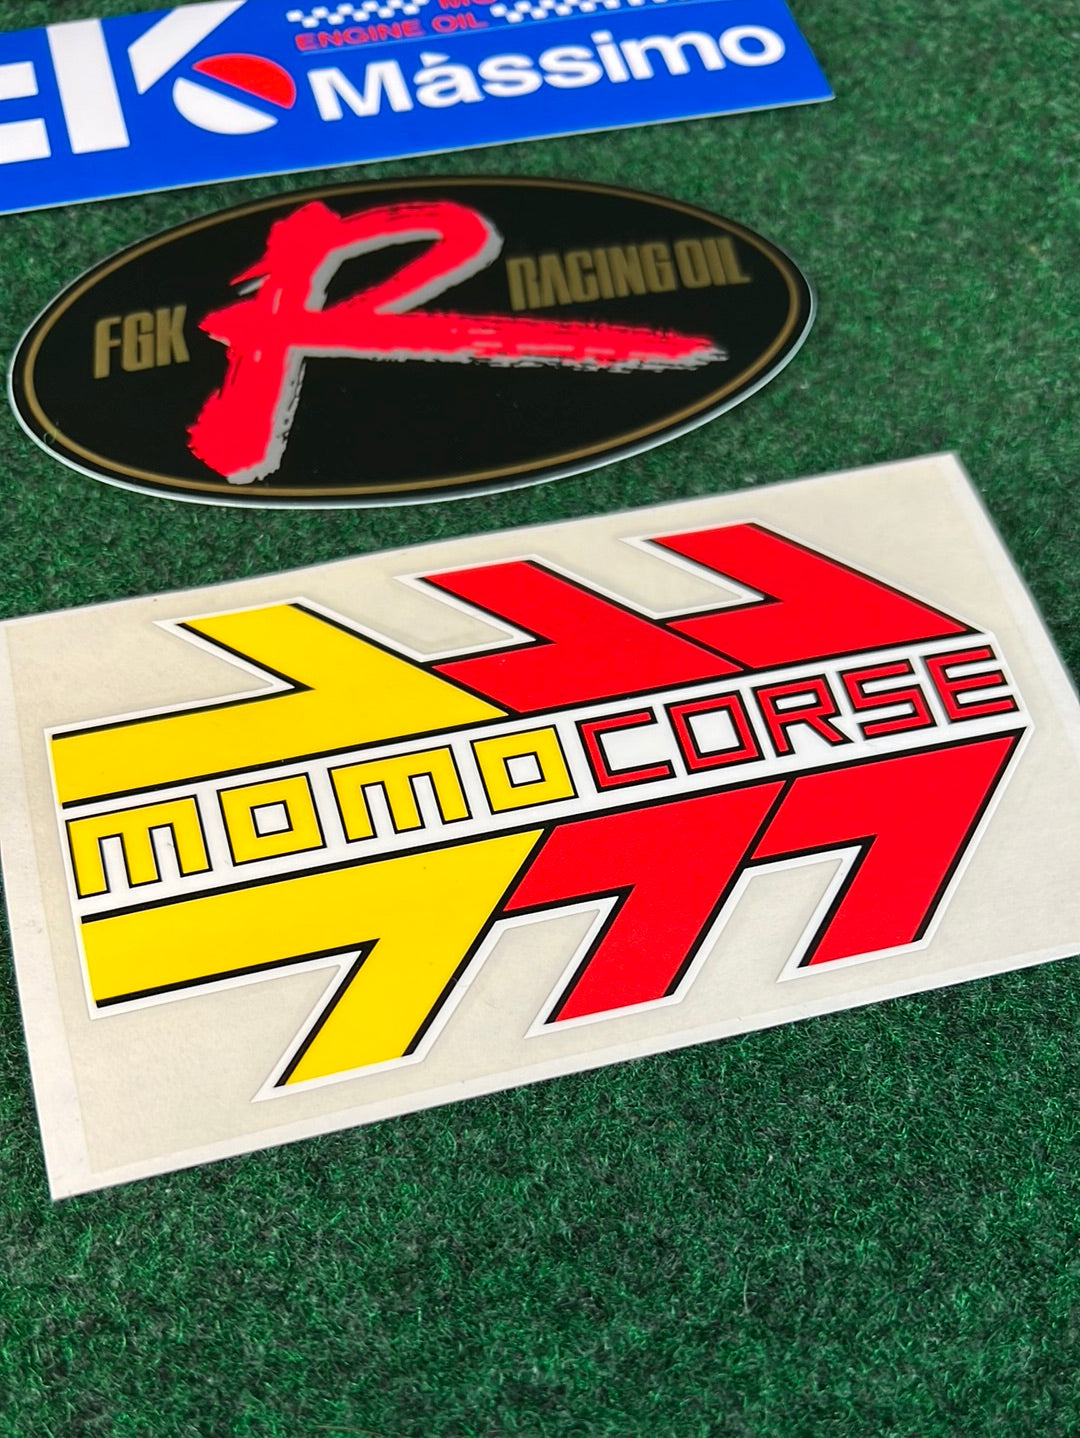 RAZO, Fk Massimo, FGK Racing Oil & MOMO Corse Sticker Set